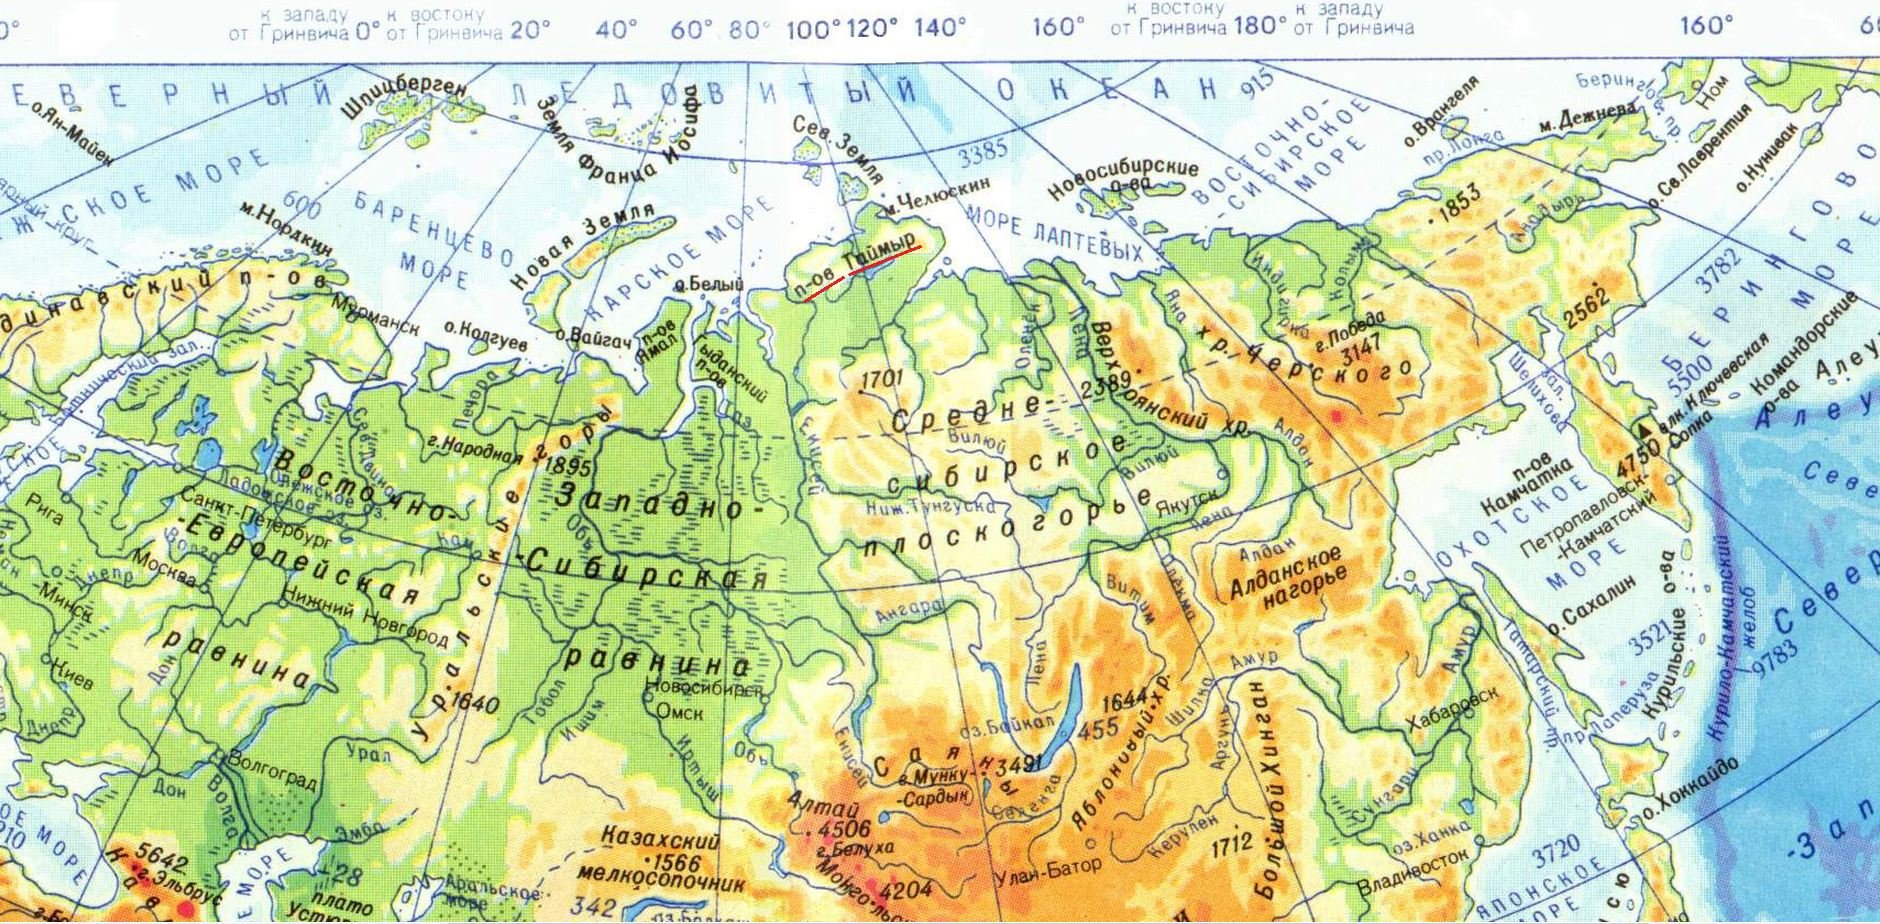 Самый большой остров евразии. Таймыр на физической карте Евразии. Физическая карта Евразии равнины. Физическая карта Евразии равнины и горы и реки озера. Полуостров Таймыр на физической карте Евразии.